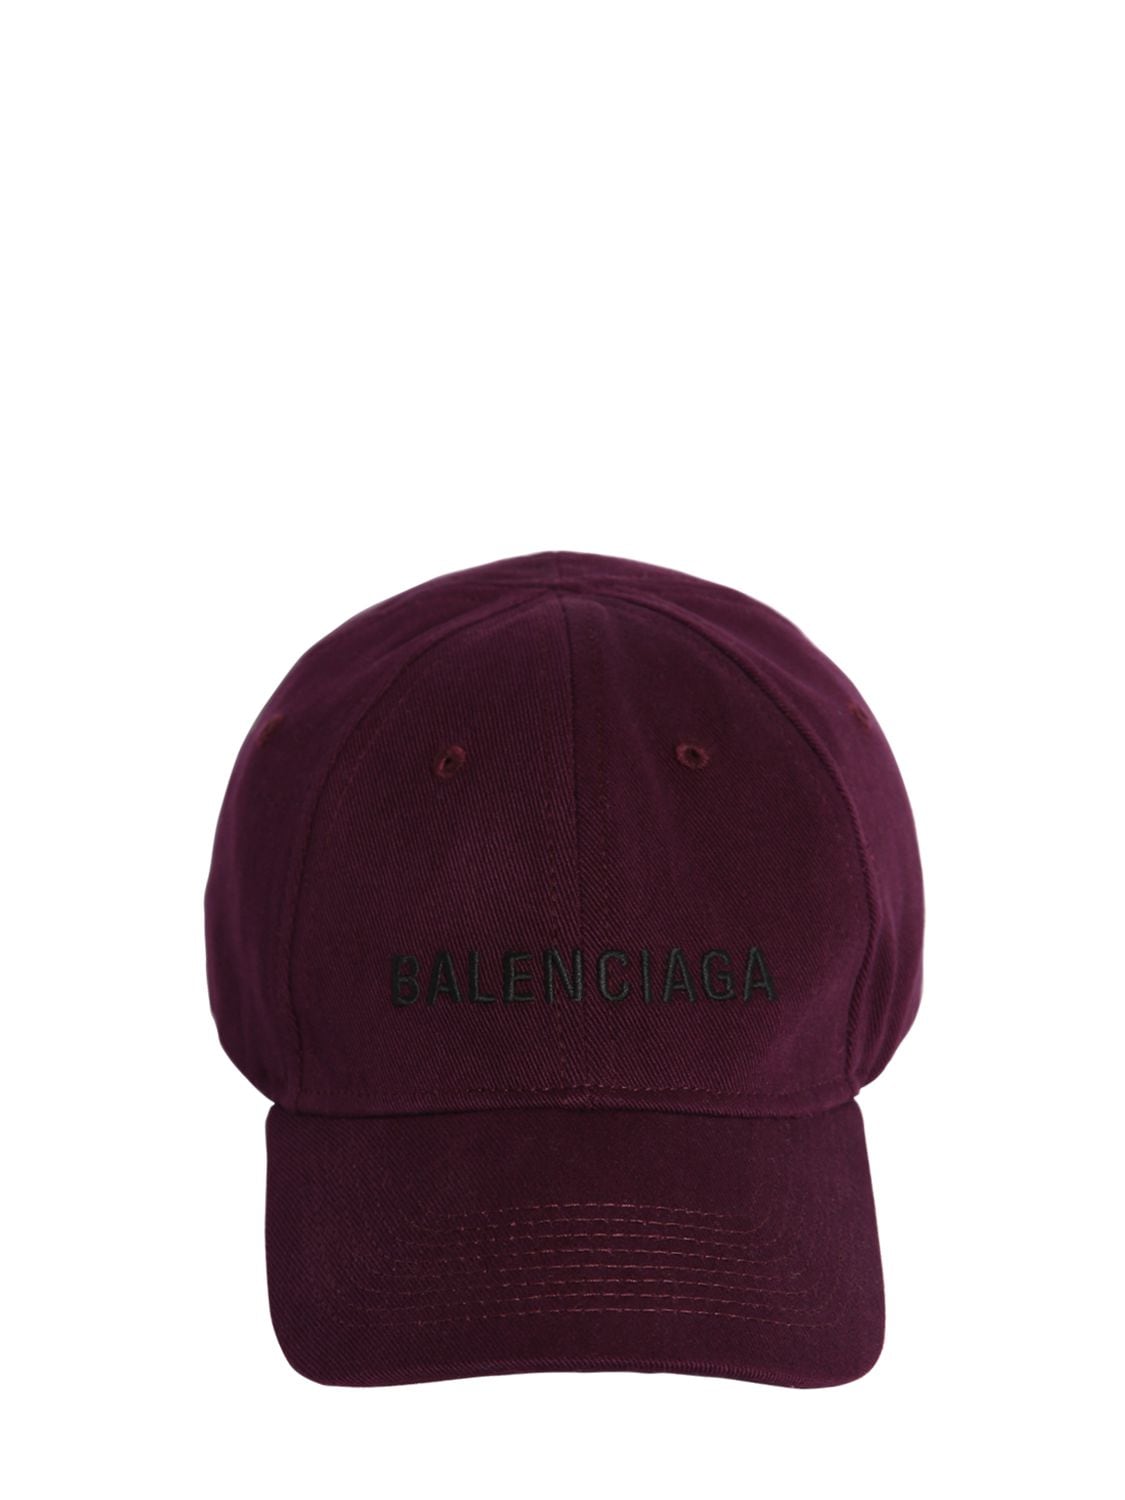 Balenciaga 刺绣logo纯棉棒球帽 In Amaranto